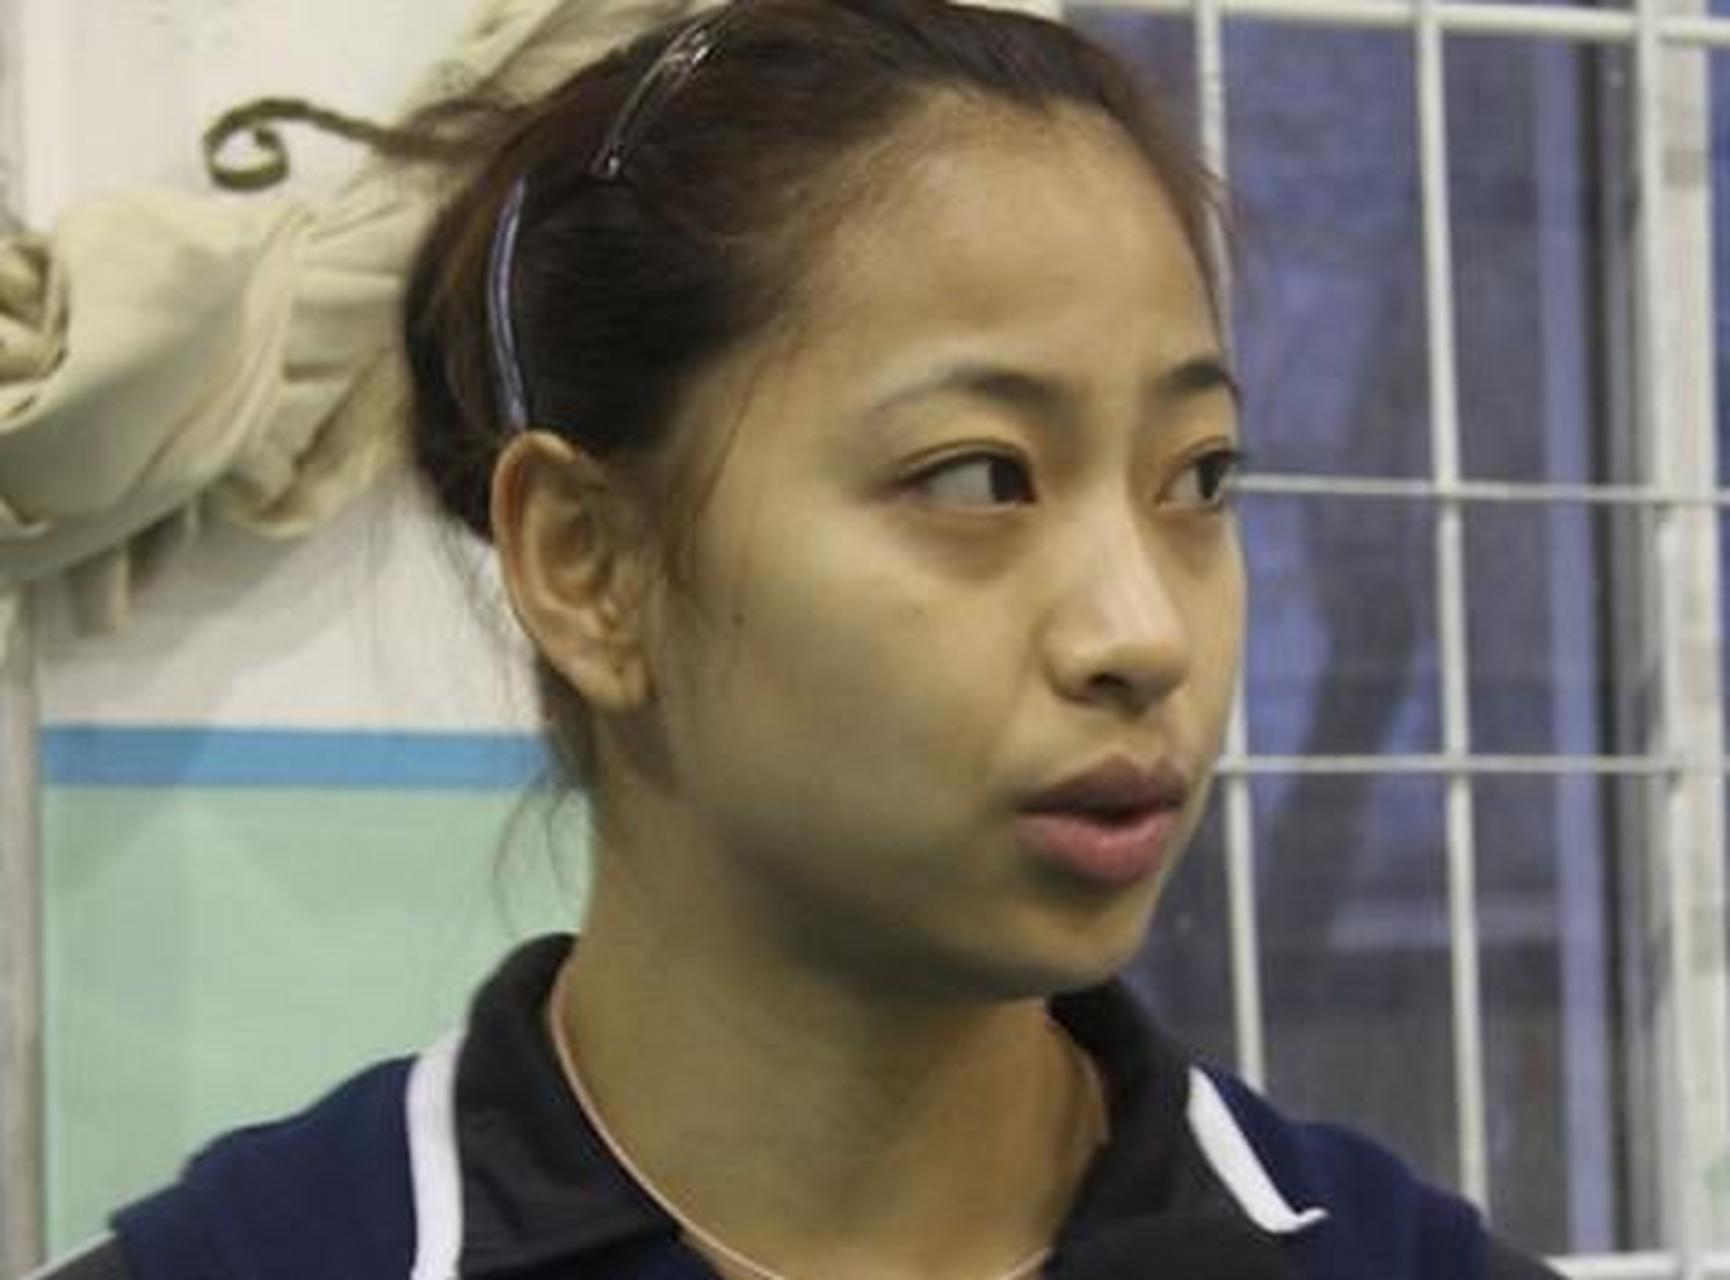 王茜生于1989年3月14日,中国女排运动员,是天津女排主教练王宝泉的